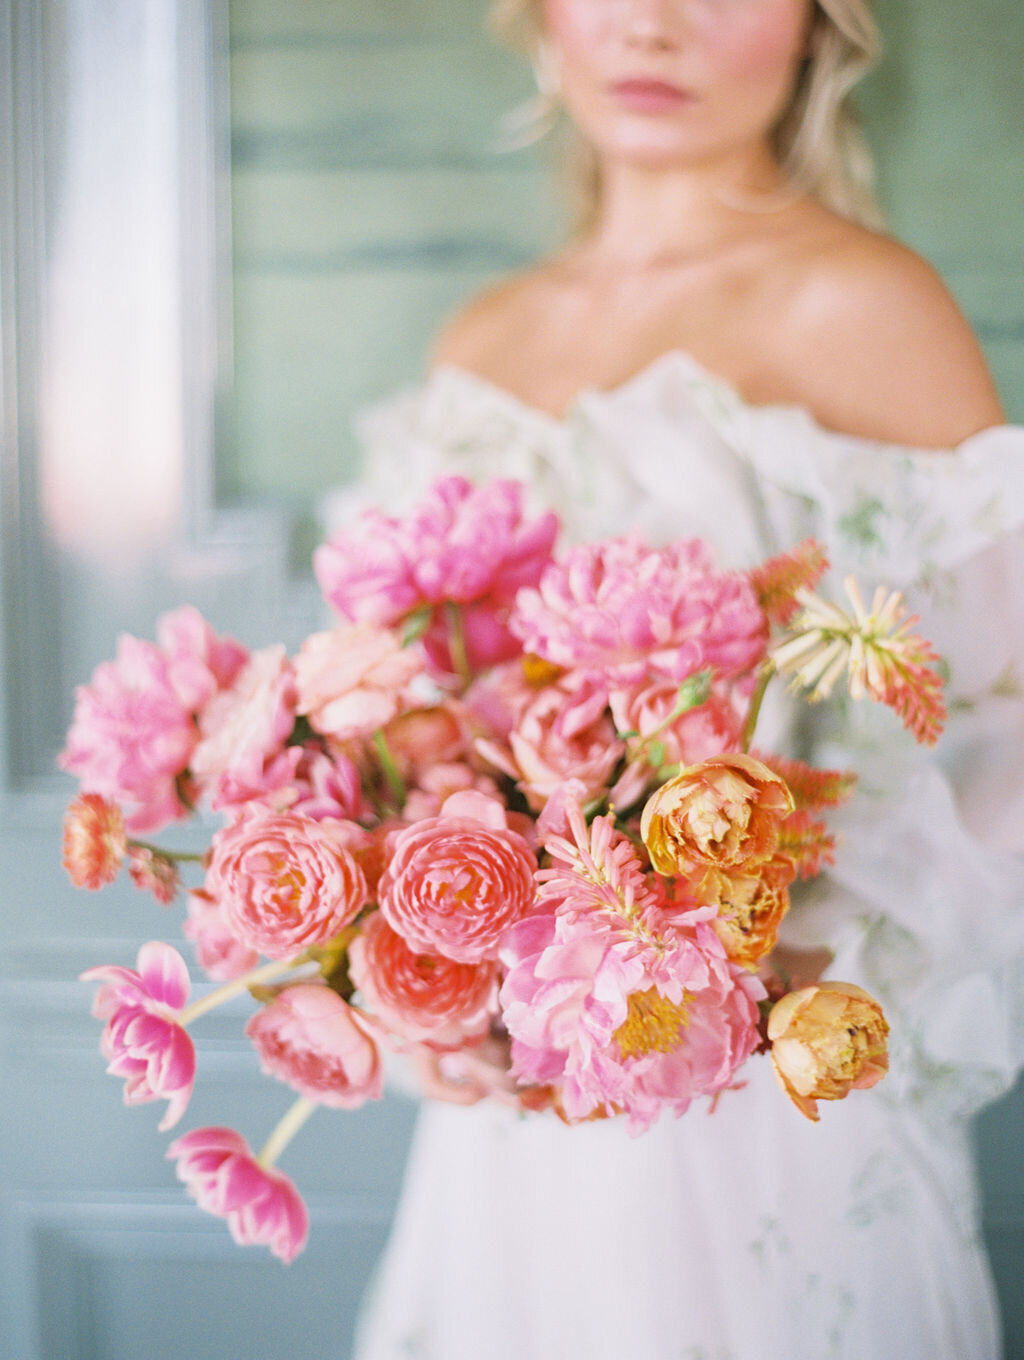 max-owens-design-english-floral-wedding-11-monique-lhuillier-bouquet